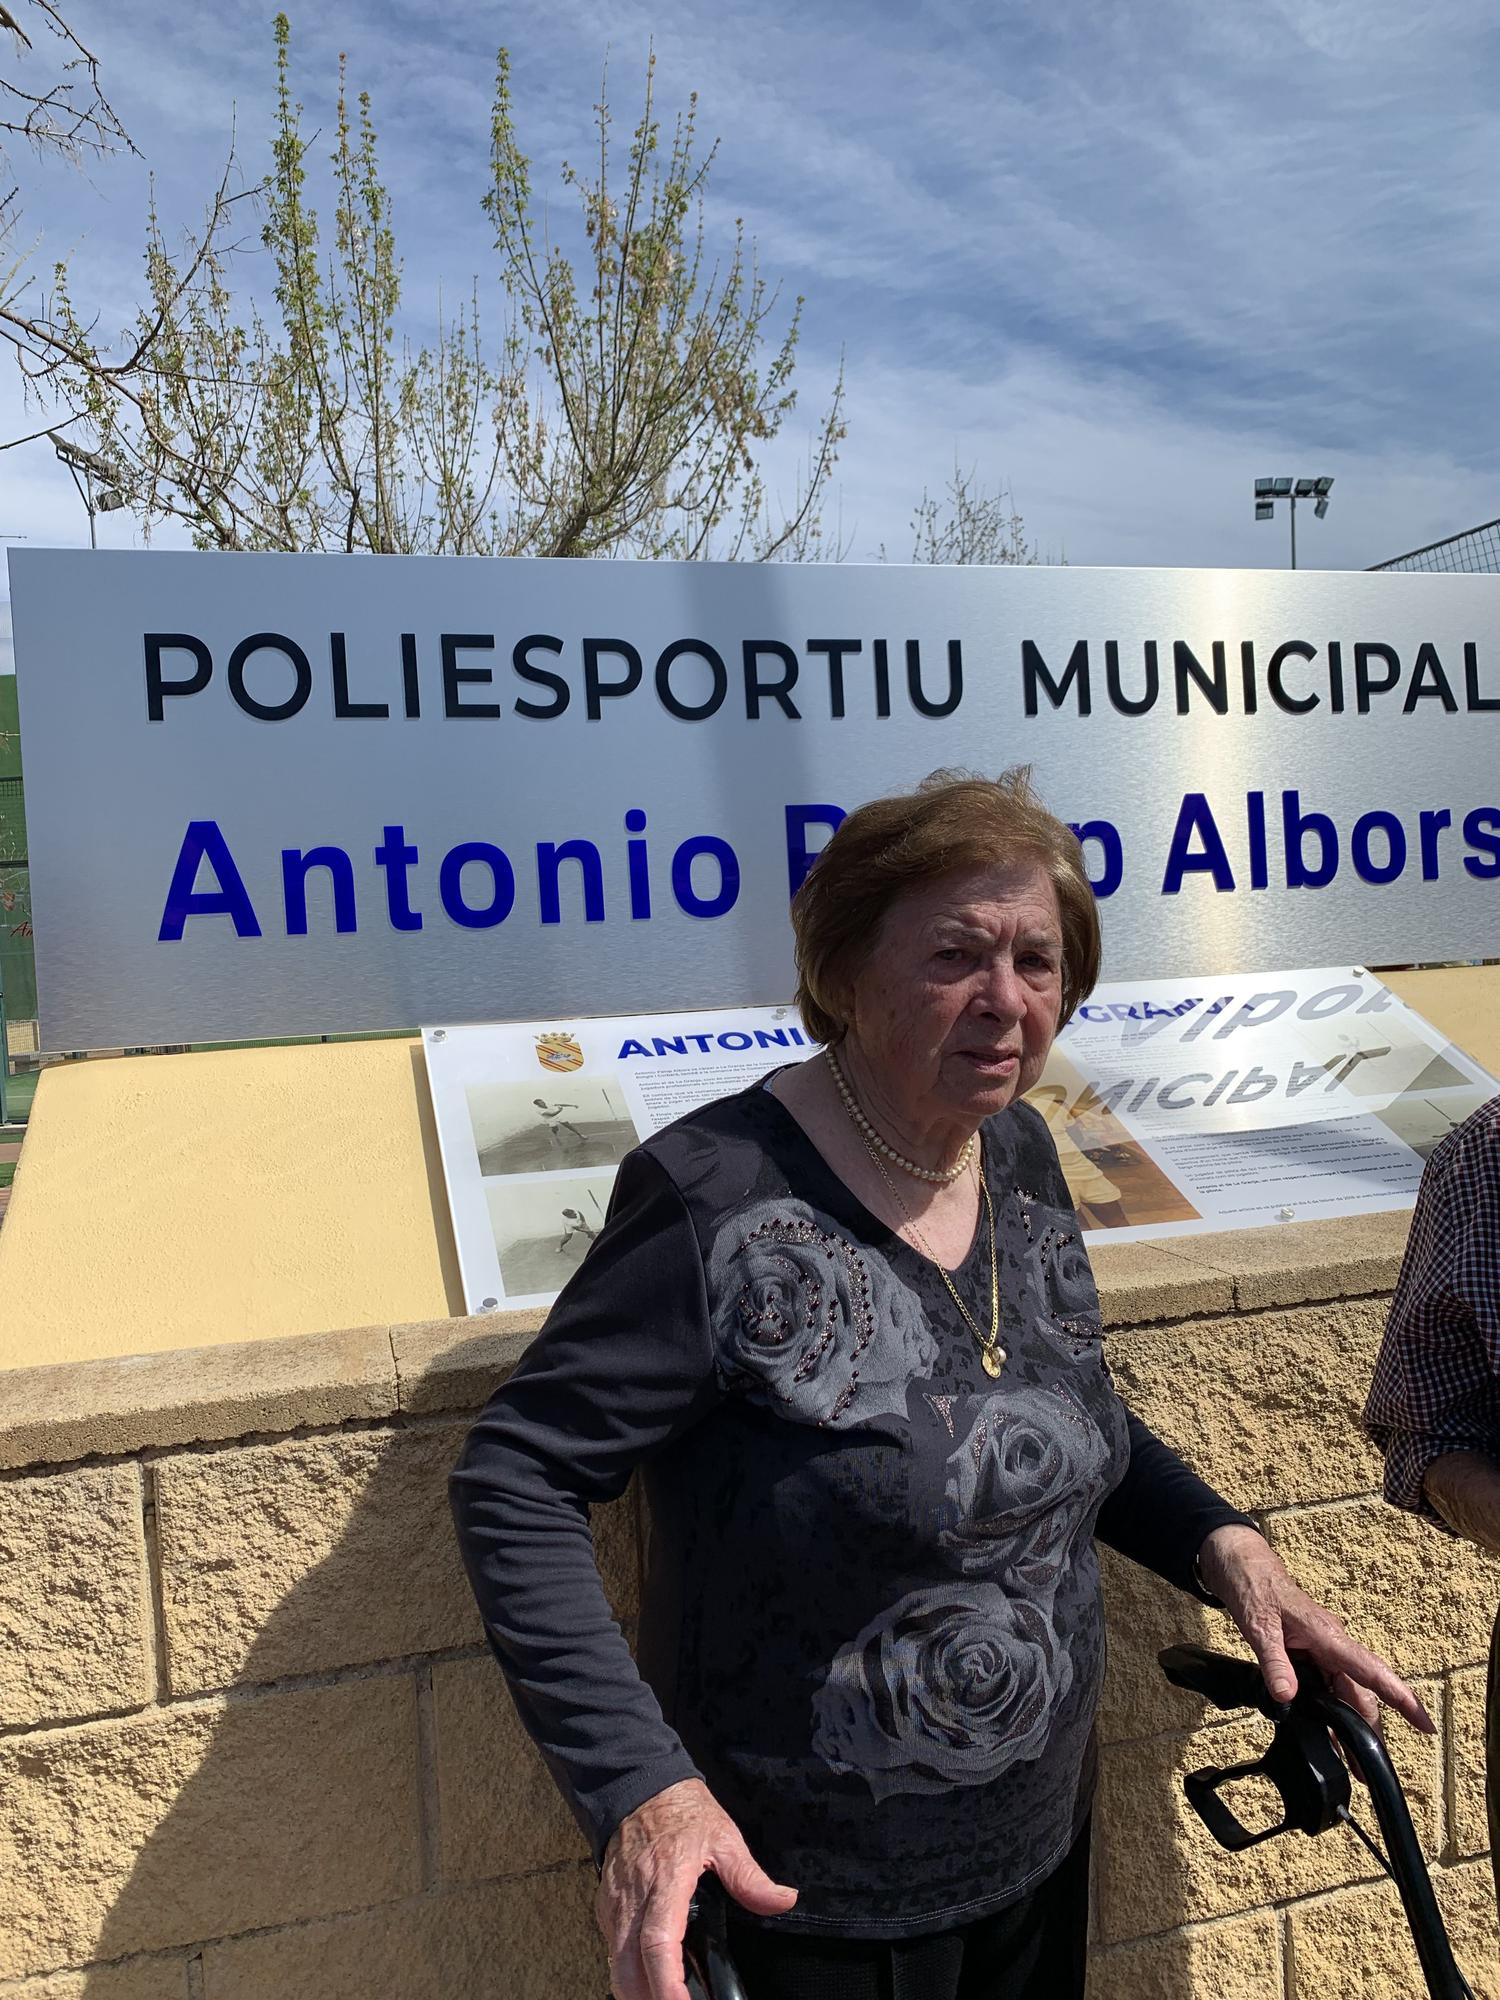 La Granja homenajea al pilotari Antonio Palop